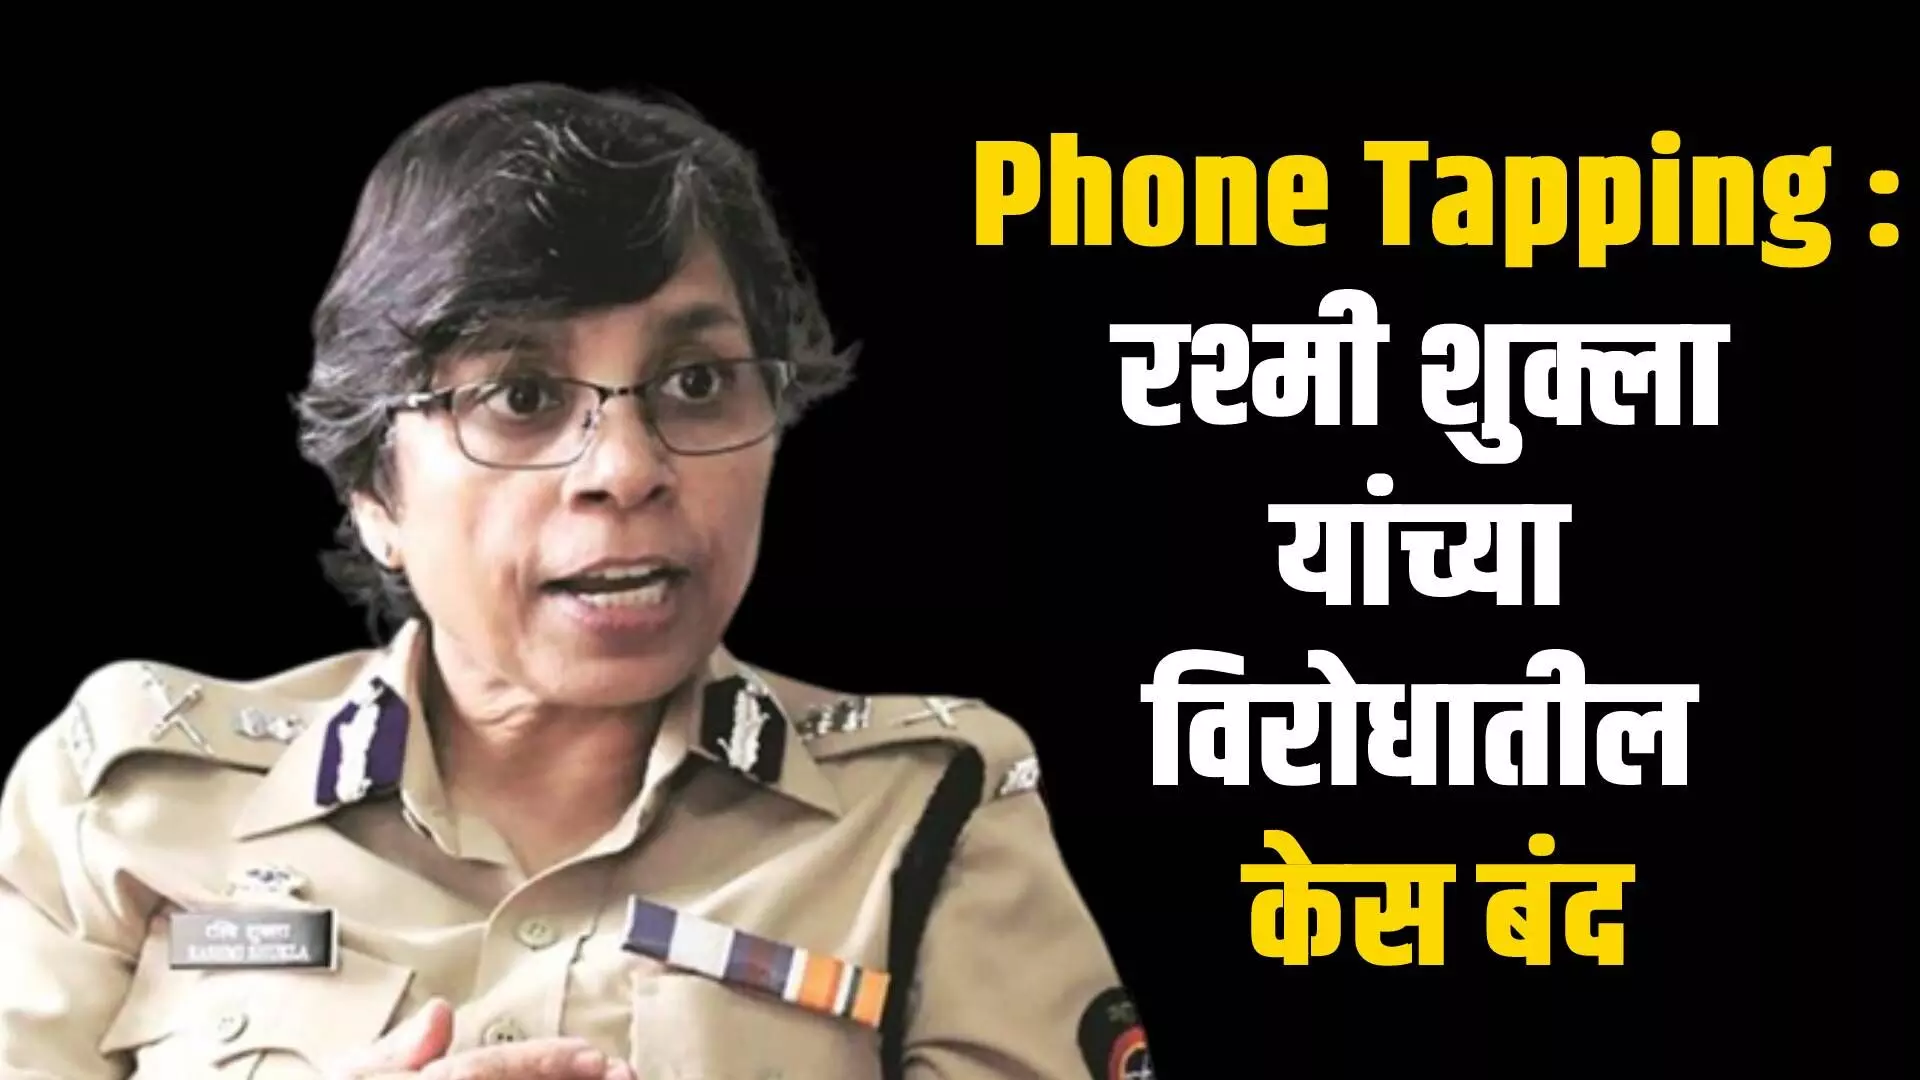 Rashmi Shukla case : रश्मी शुक्ला यांच्याविरोधातील फोन टॅपिंग केसची फाईल बंद